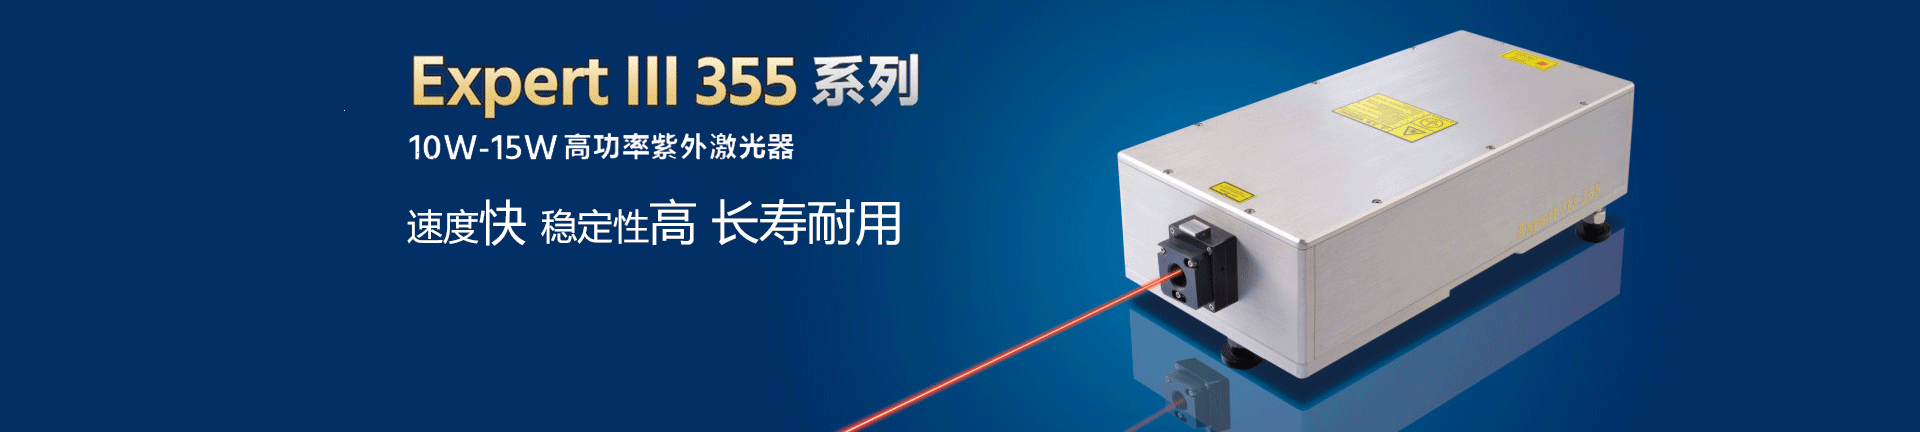 深圳瑞豐恒激光技術有限公司